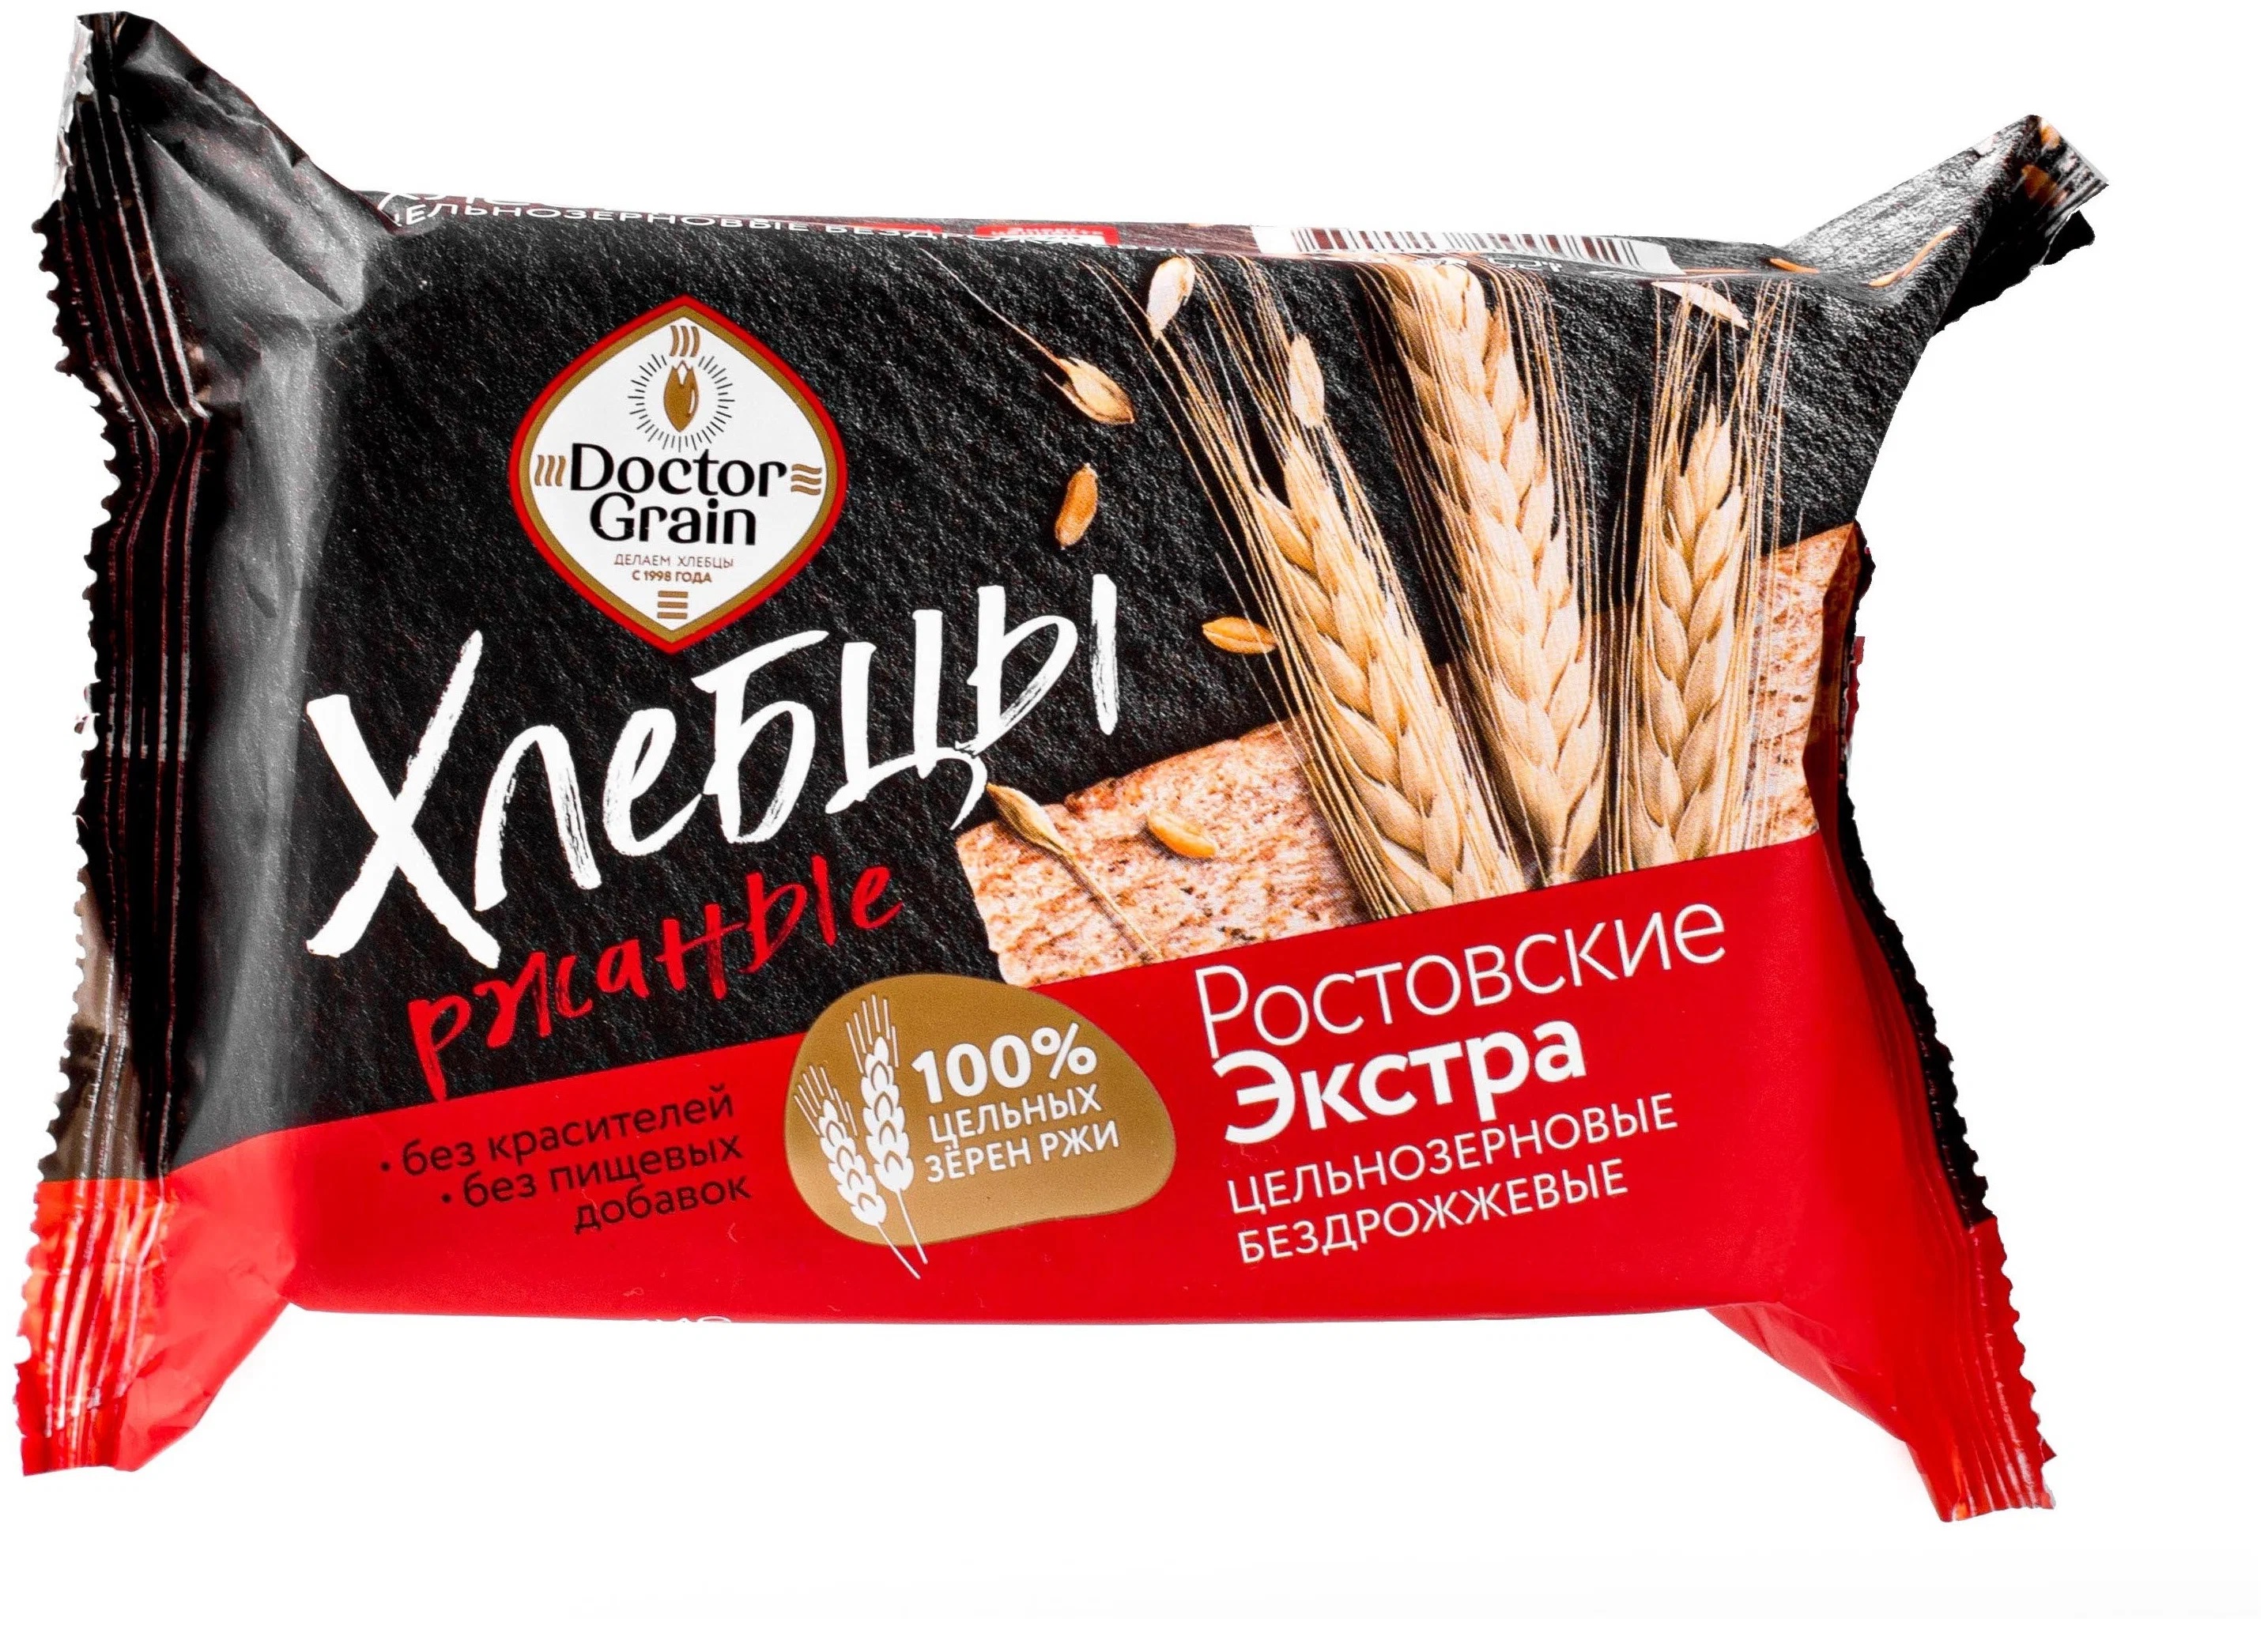 Хлебцы Ростовские Экстра ржаные | 60 г | Doctor Grain